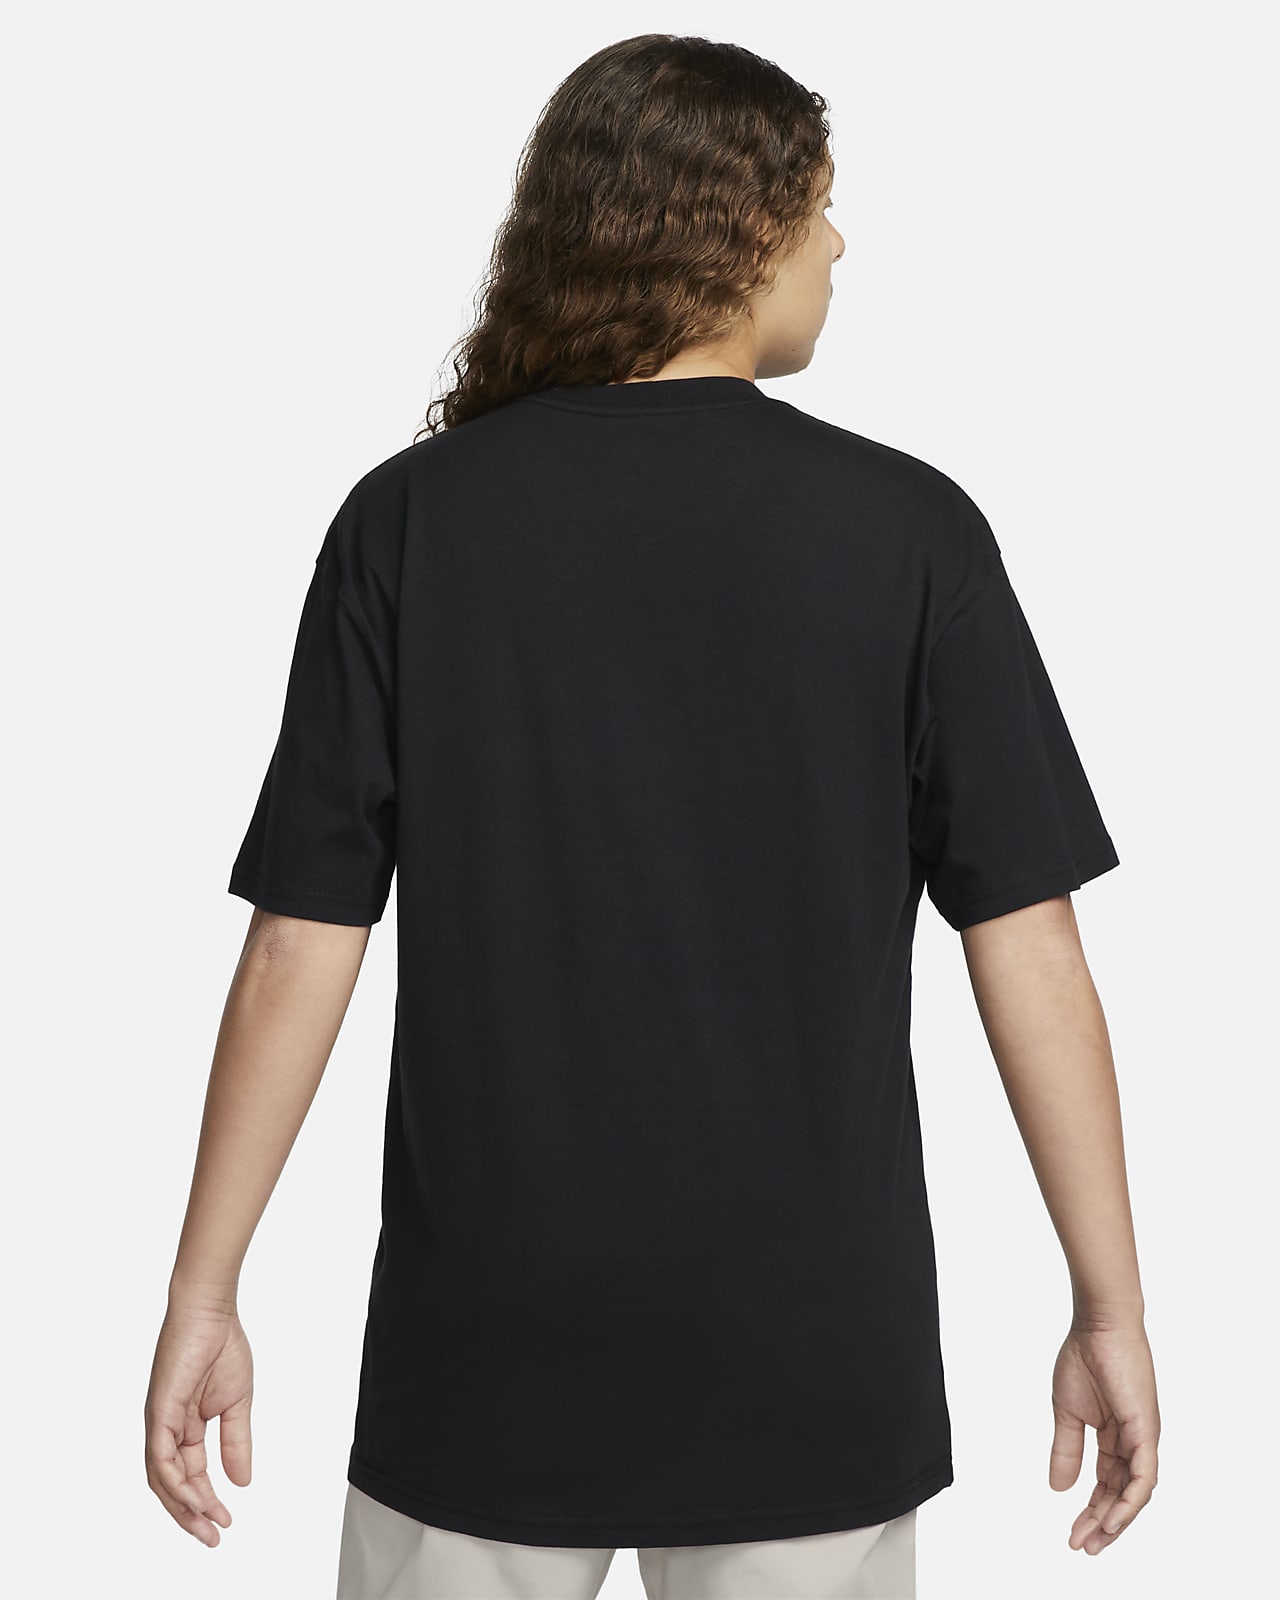 Nike x Drake NOCTA NRG Men's Max90 T-Shirt Black FN7663-010